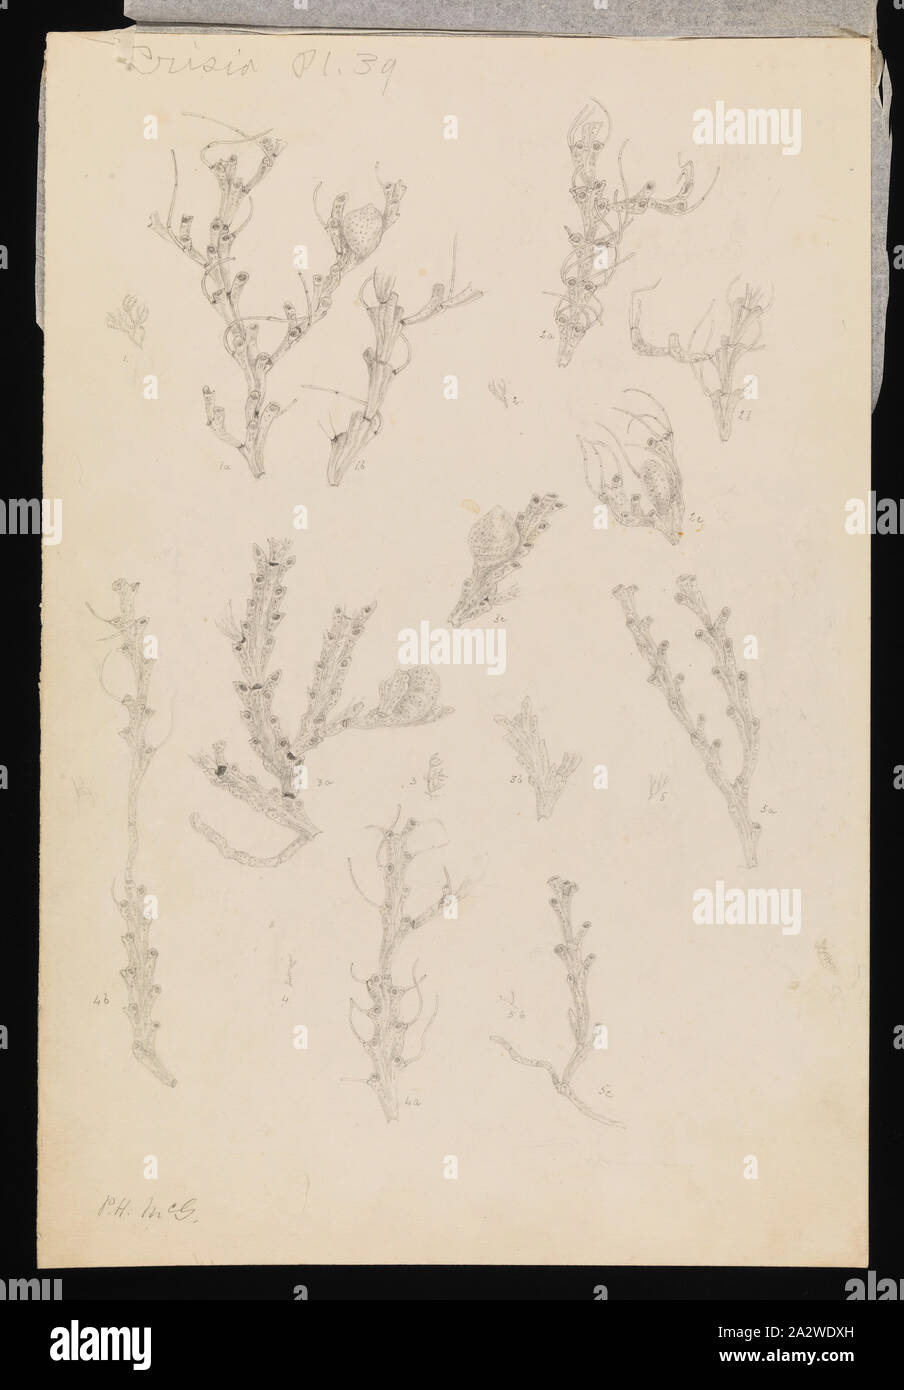 Abbildung - Bleistift auf Papier Der bryozoa, veröffentlicht als Platte 39 im Prodromus der Zoologie von Victoria von Frederick McCoy. Von Seidenpapier bedeckt Stockfoto